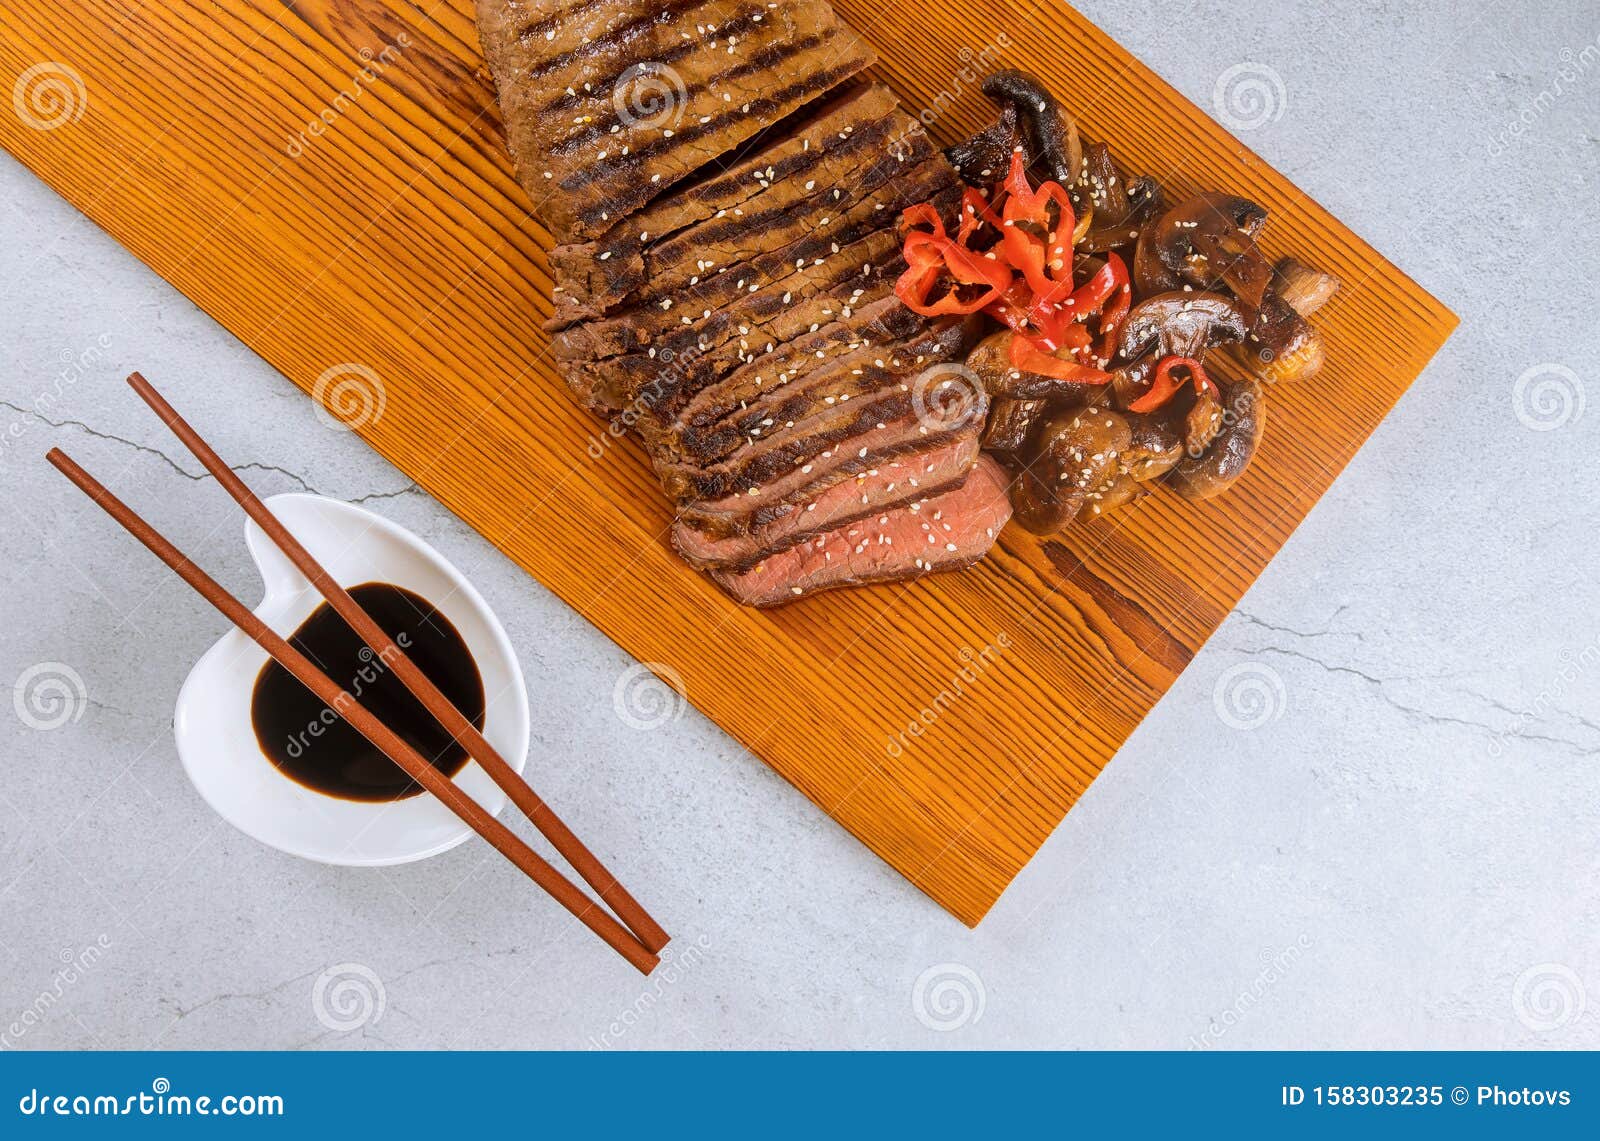 Bistecca Di Manzo Grigliata Con Bastone Da lio Immagine Stock Immagine Di Sugoso Beefsteak